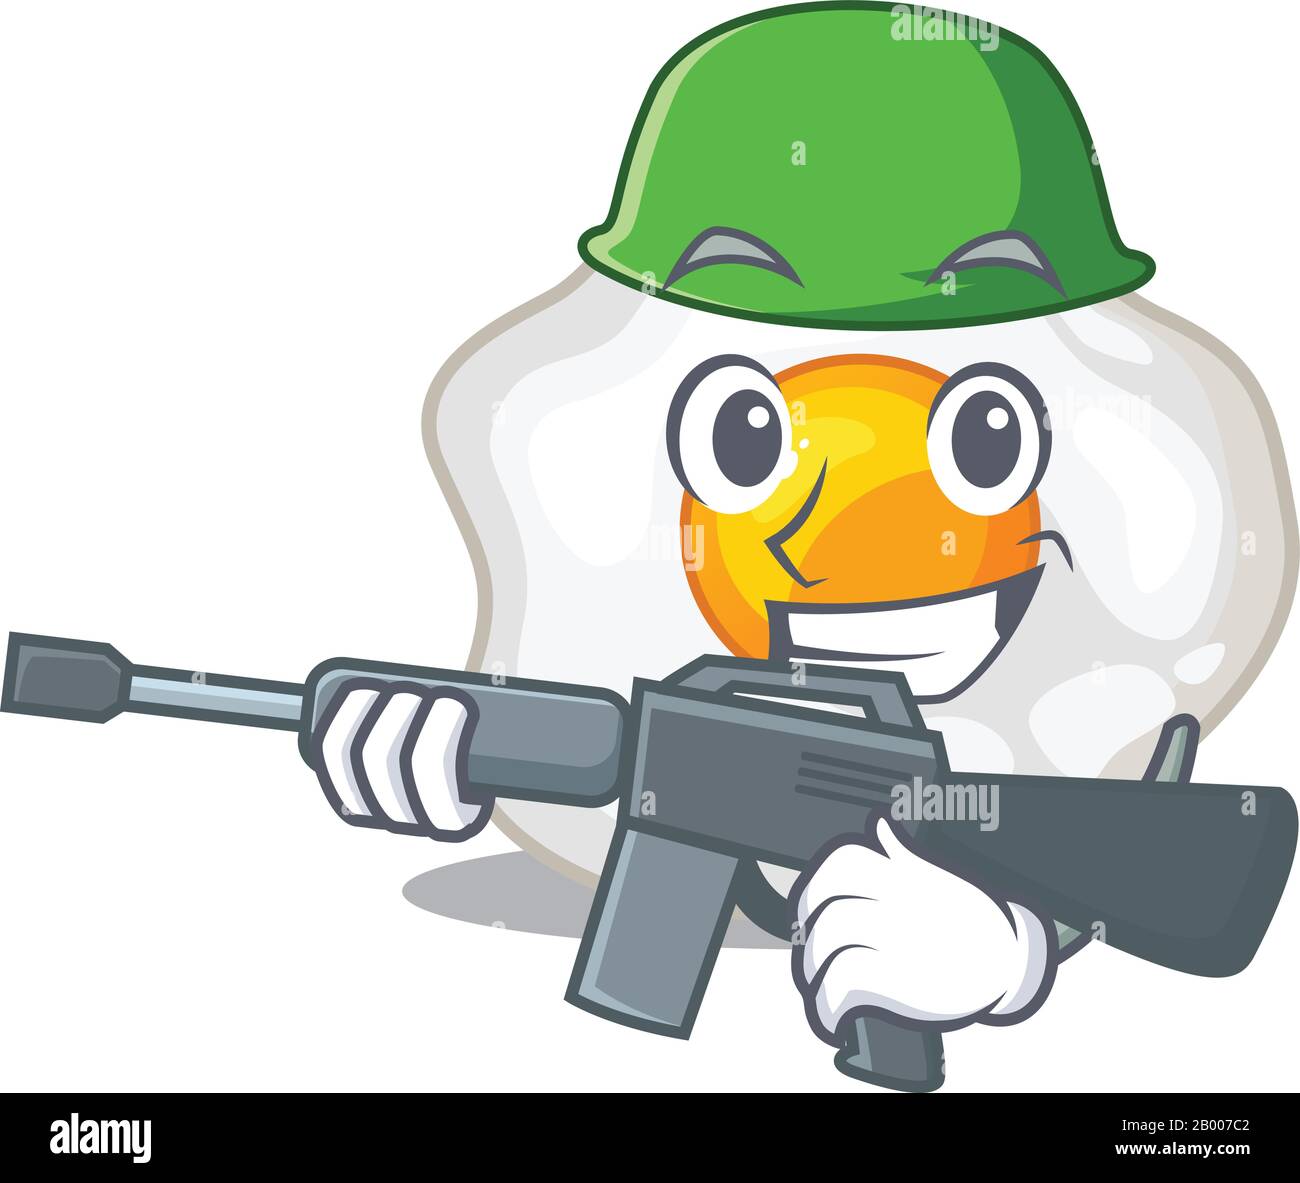 Chicken Gun Cartoon Vector Stock Vector (Royalty Free) 683897428